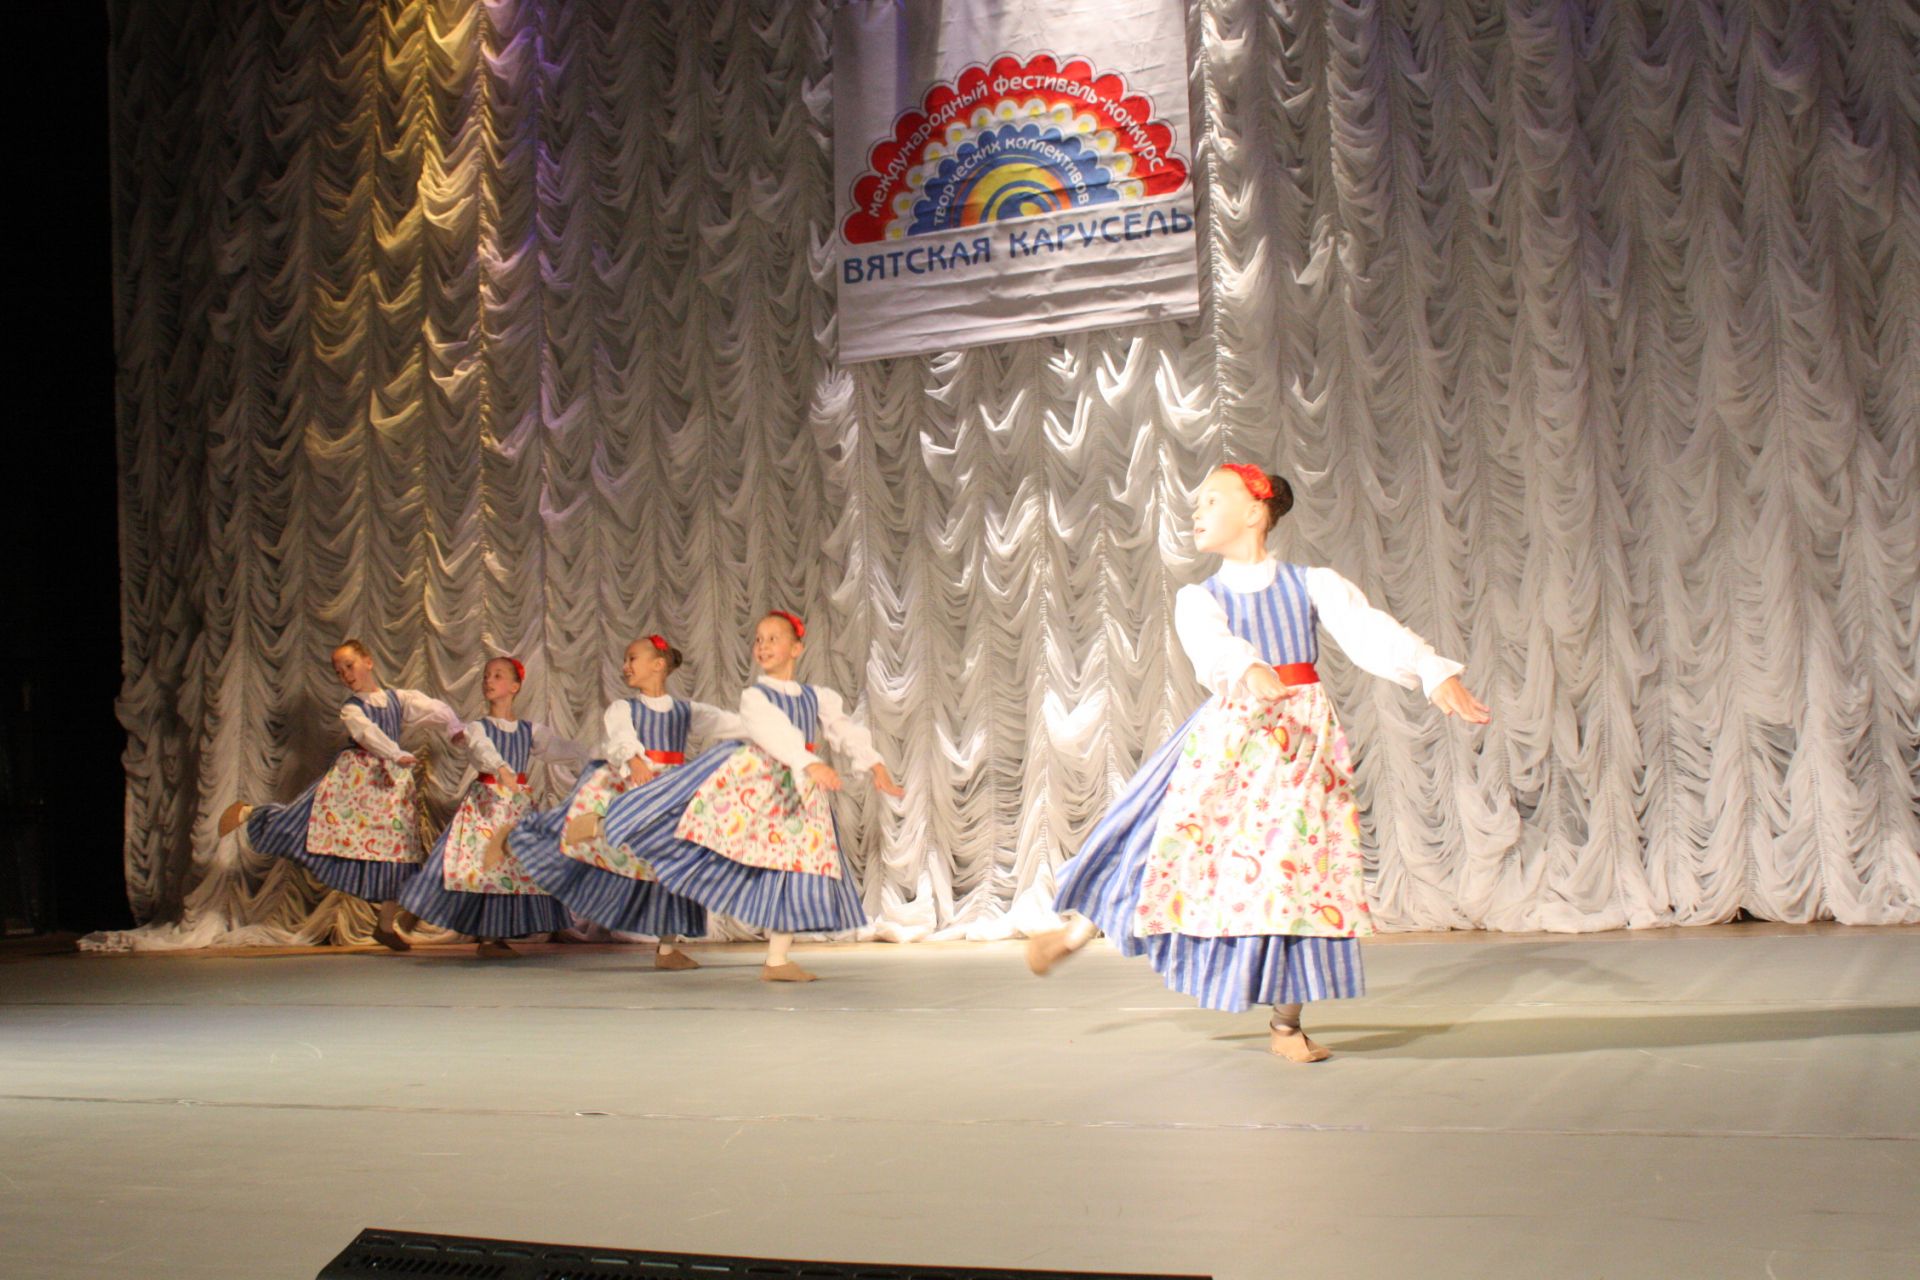 "Танцевальная деревня" в Чистополе (Открытие)